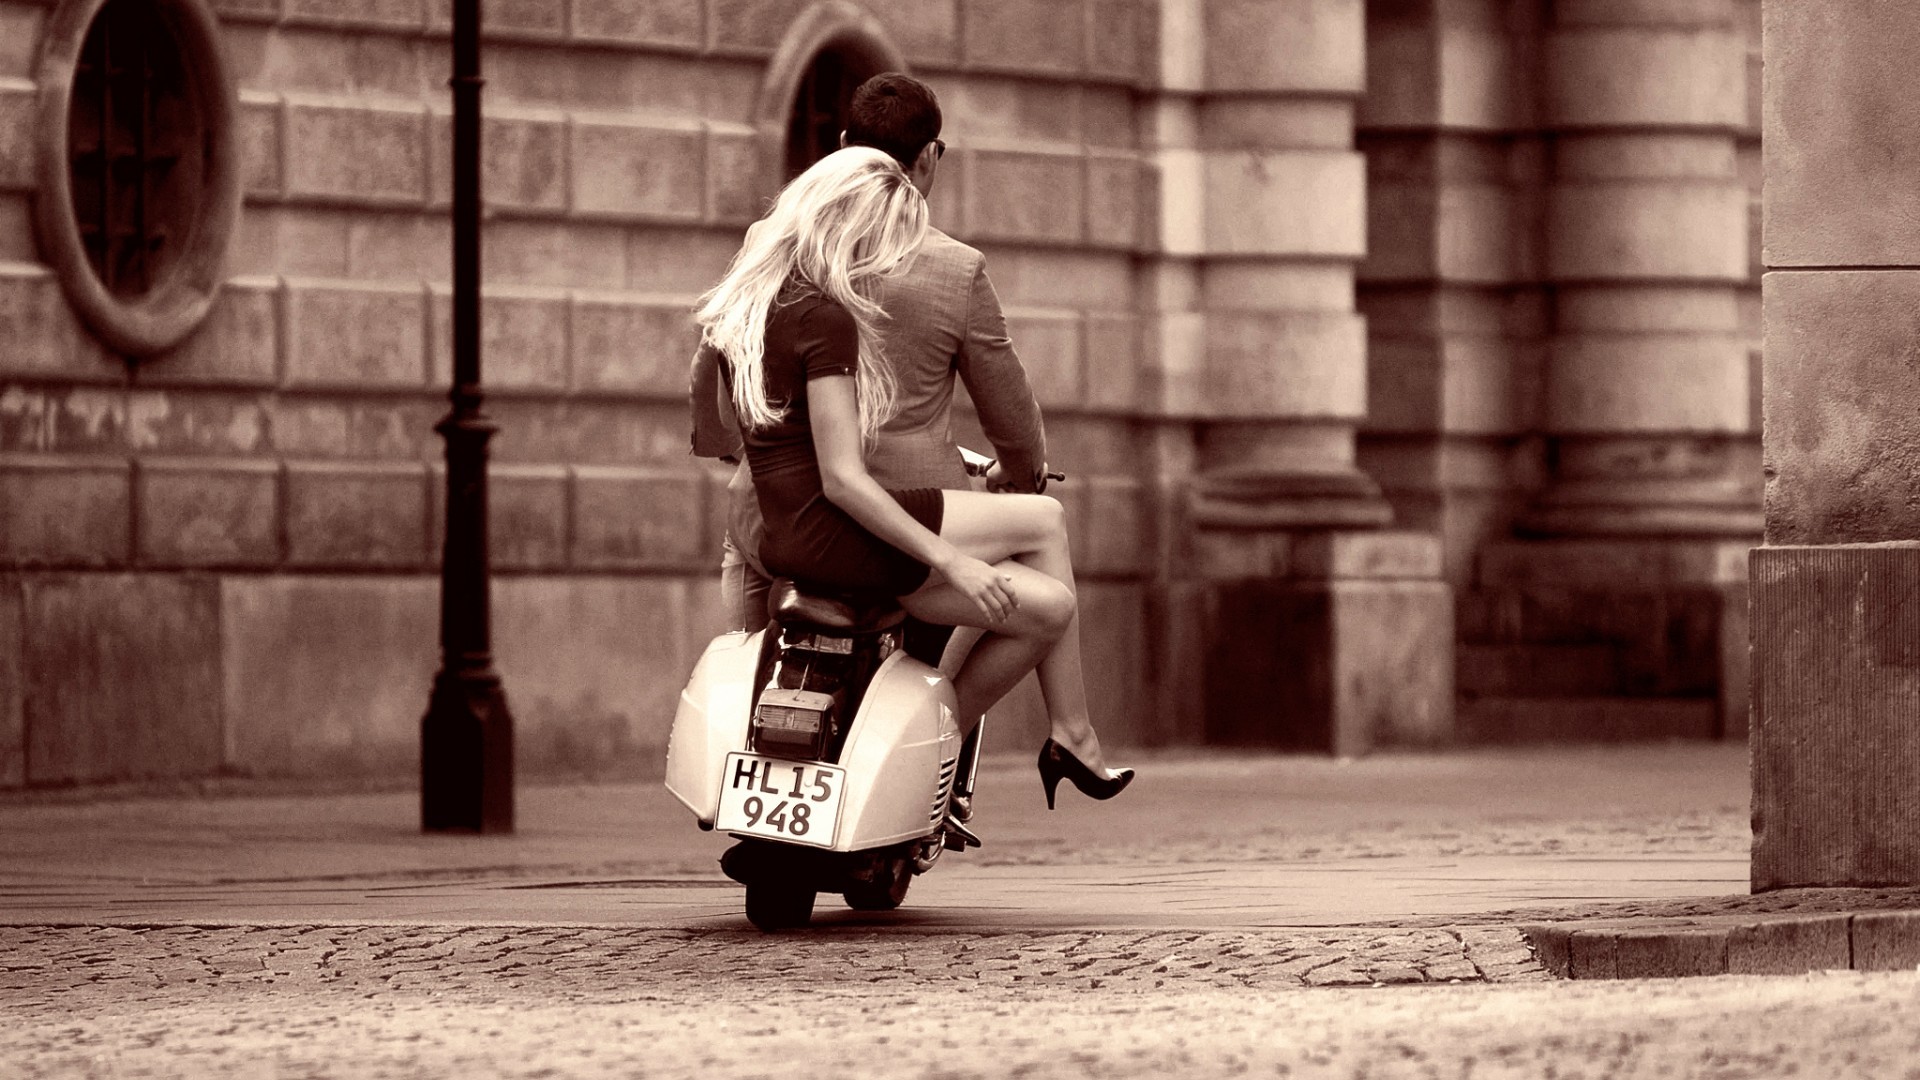 People 1920x1080 blonde sepia couple women men urban vehicle scooters heels legs crossed city long hair model